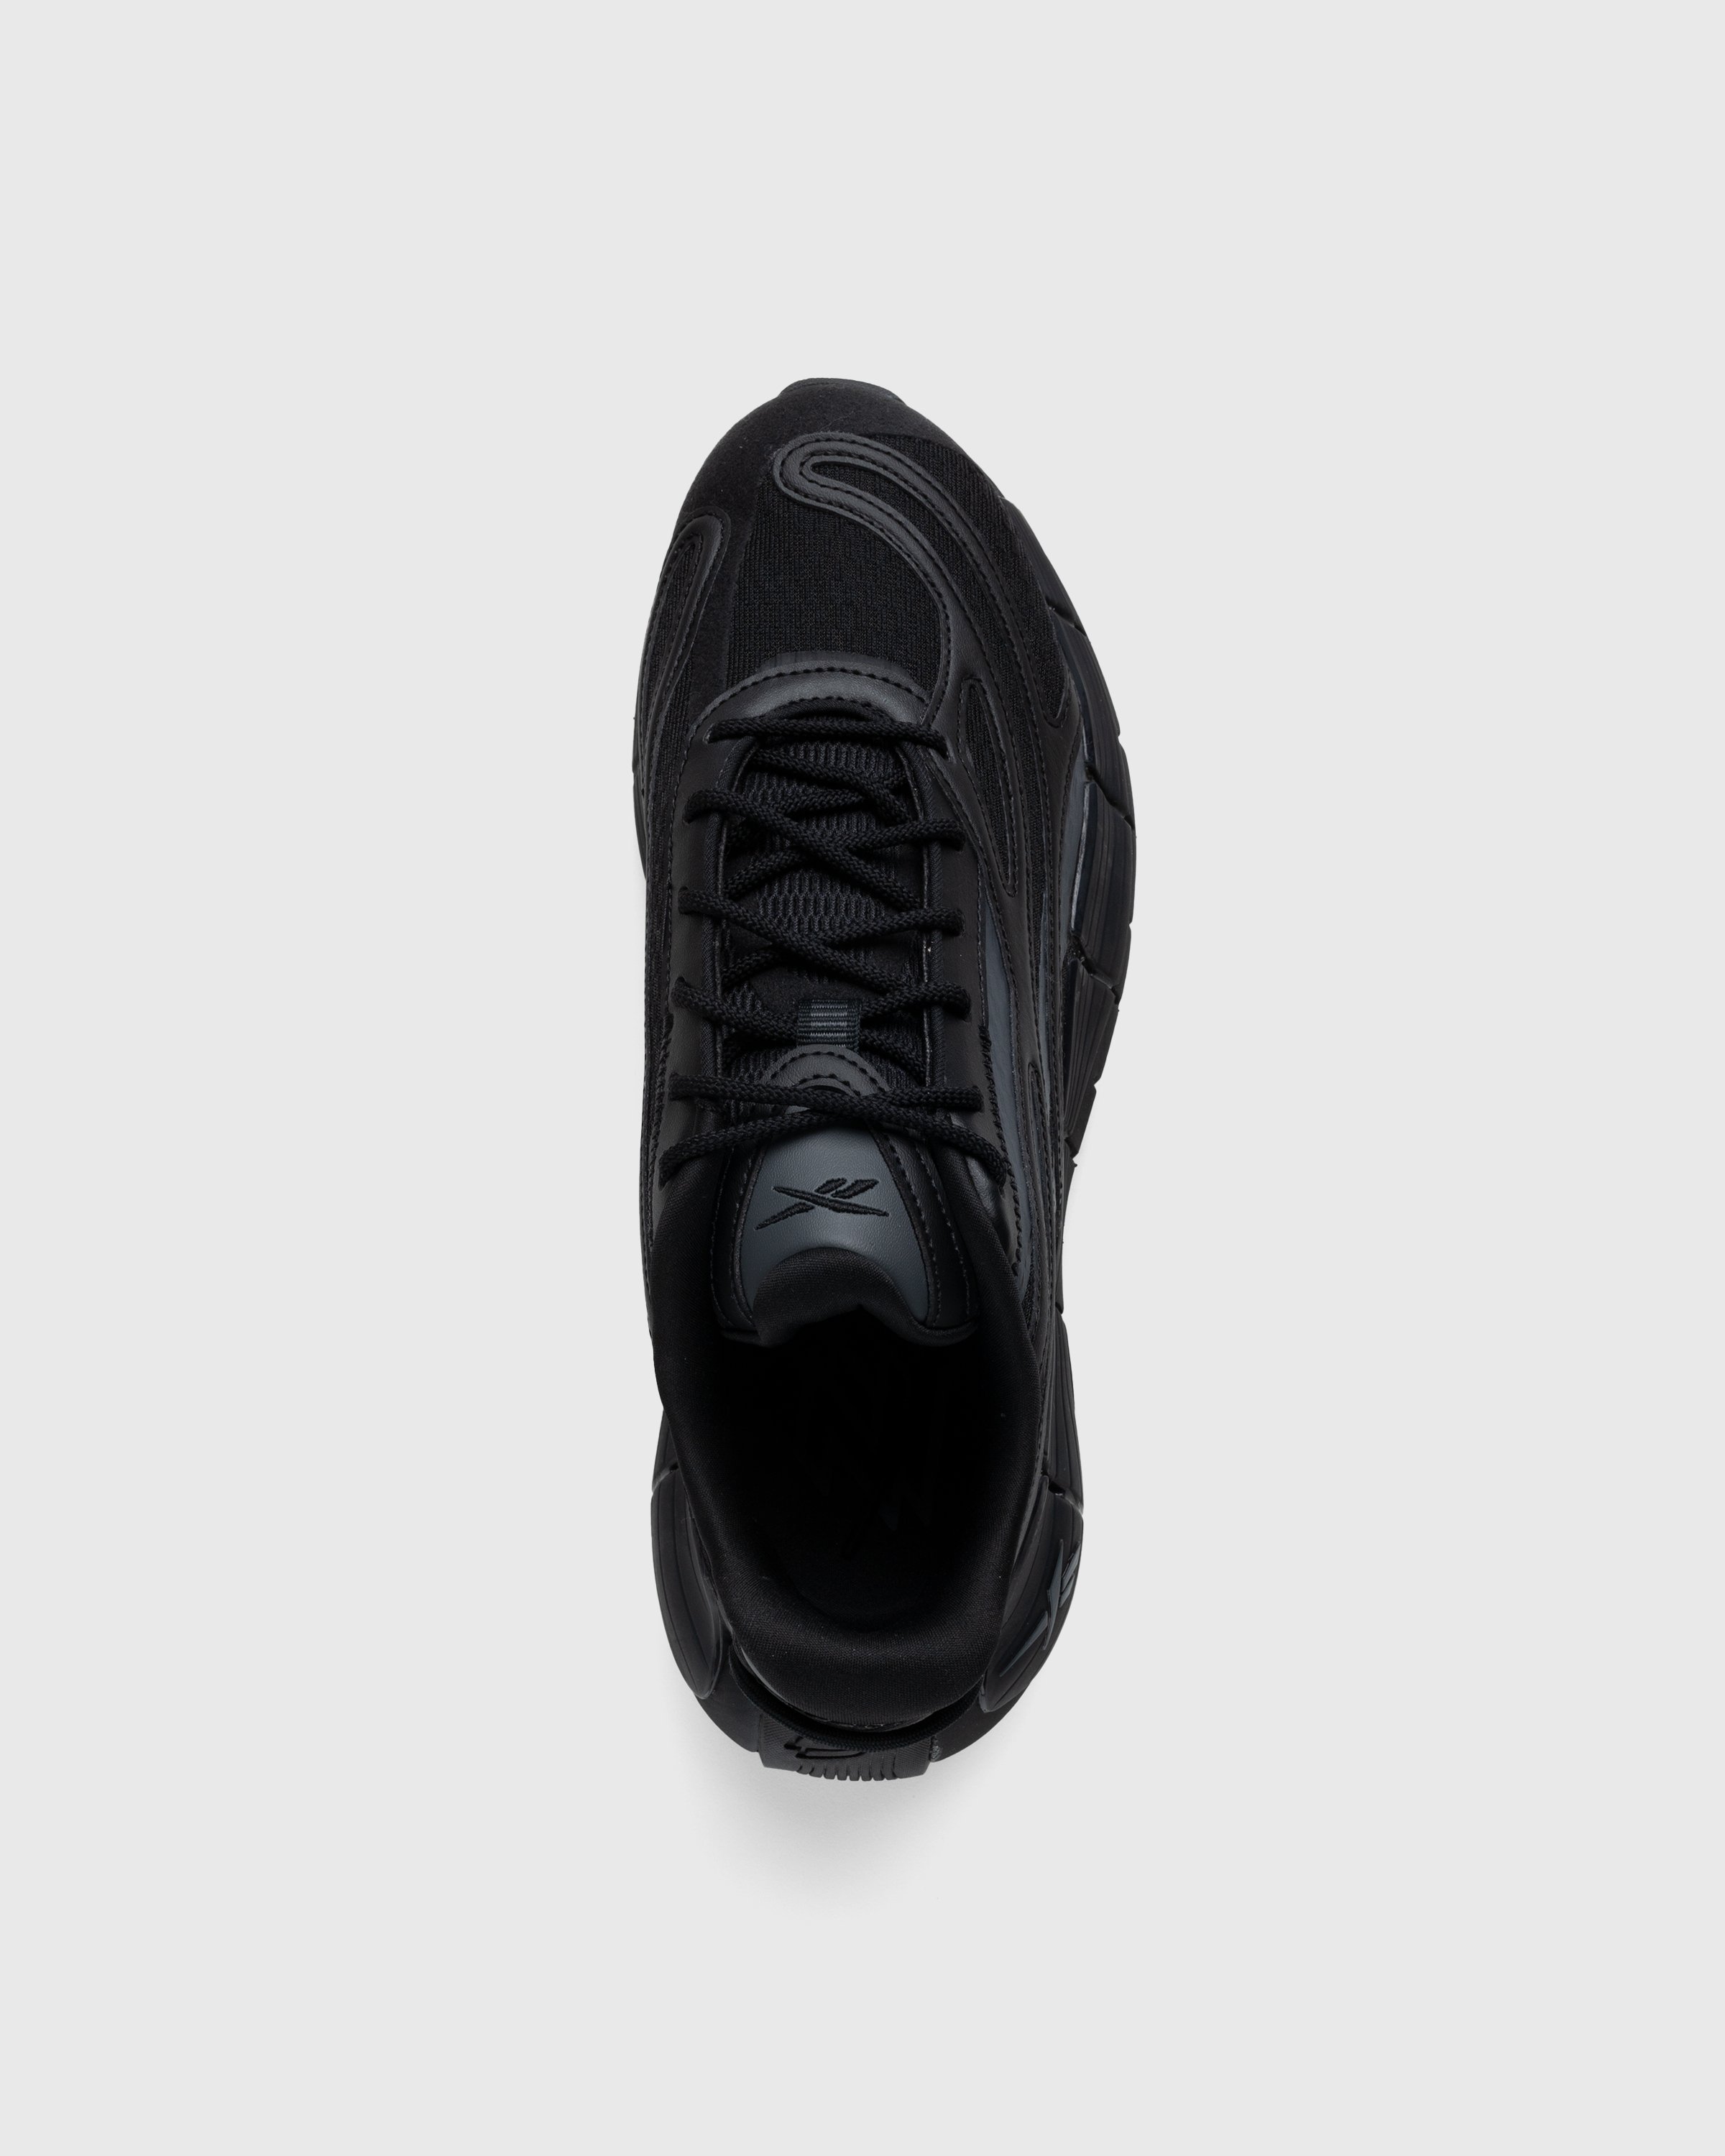 Reebok - Zig Kinetica 2.5 Black - Footwear - Black - Image 4